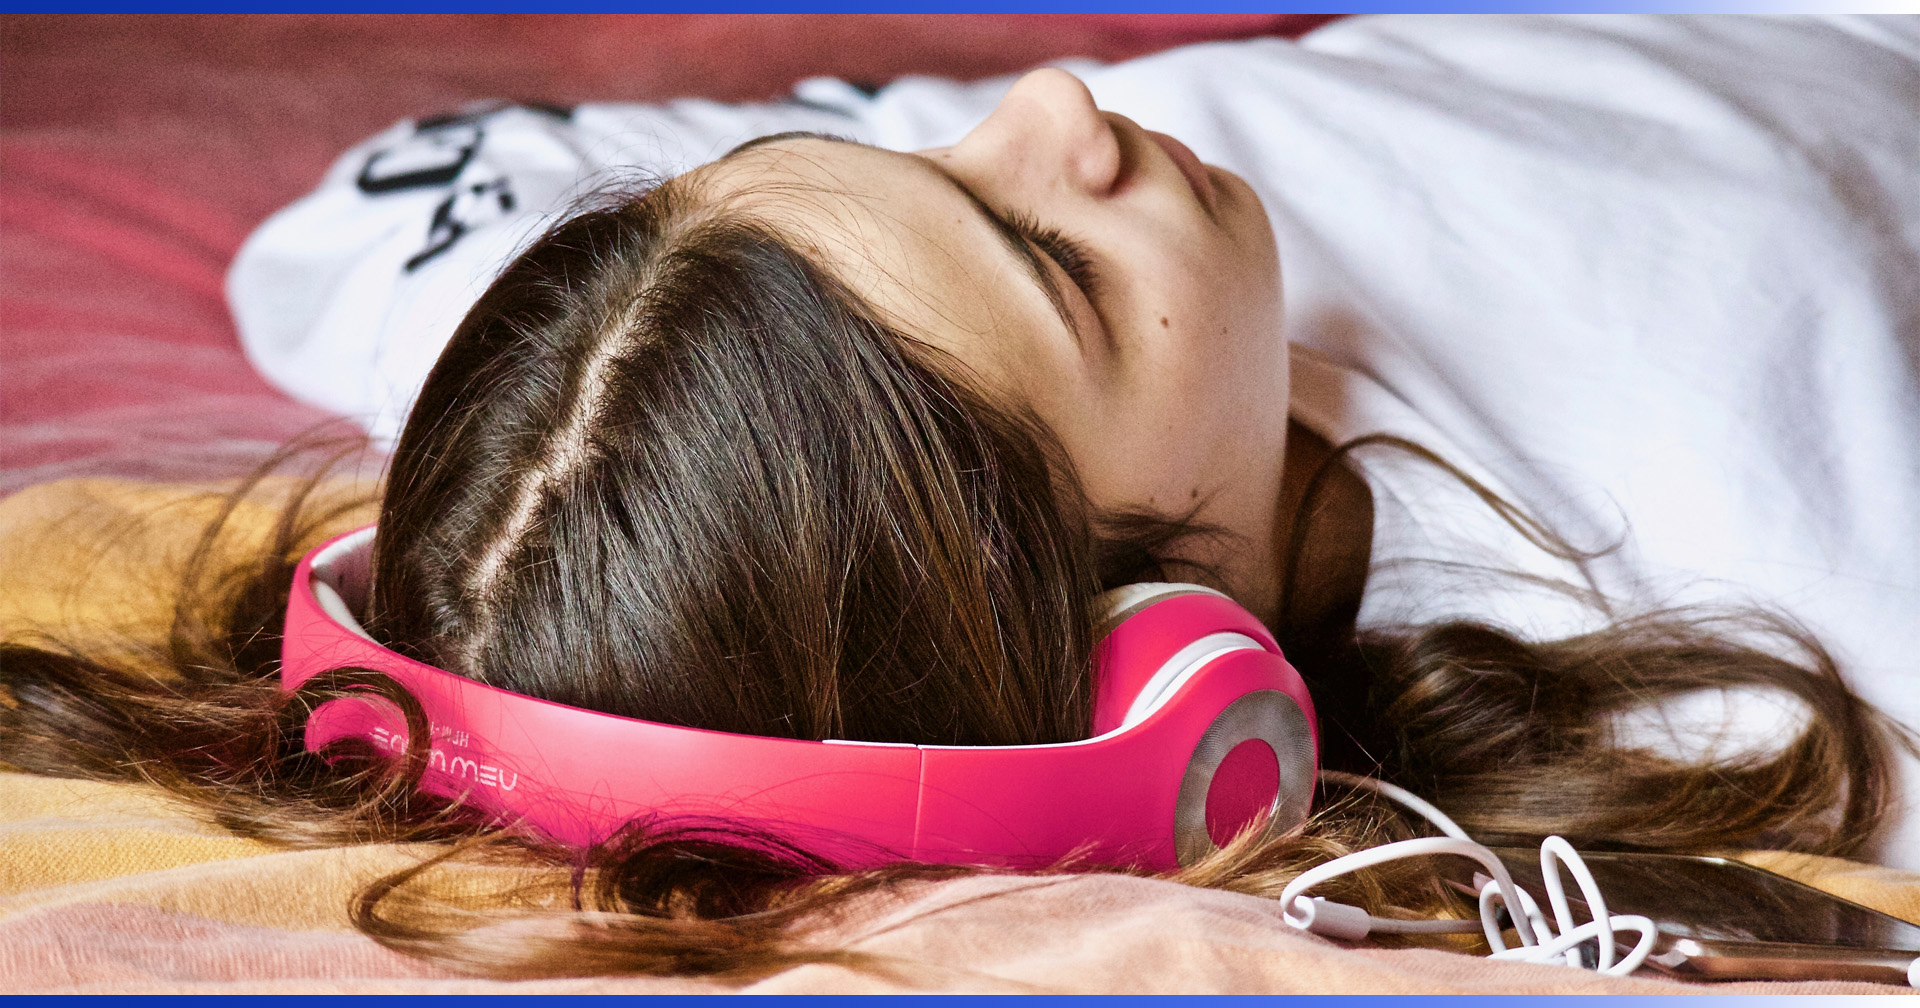 วัยรุ่นราว 1,000 ล้านคน เสี่ยงต่อการสูญเสียการได้ยินจากการฟังหูฟังหรือเข้าร่วมคอนเสิร์ต